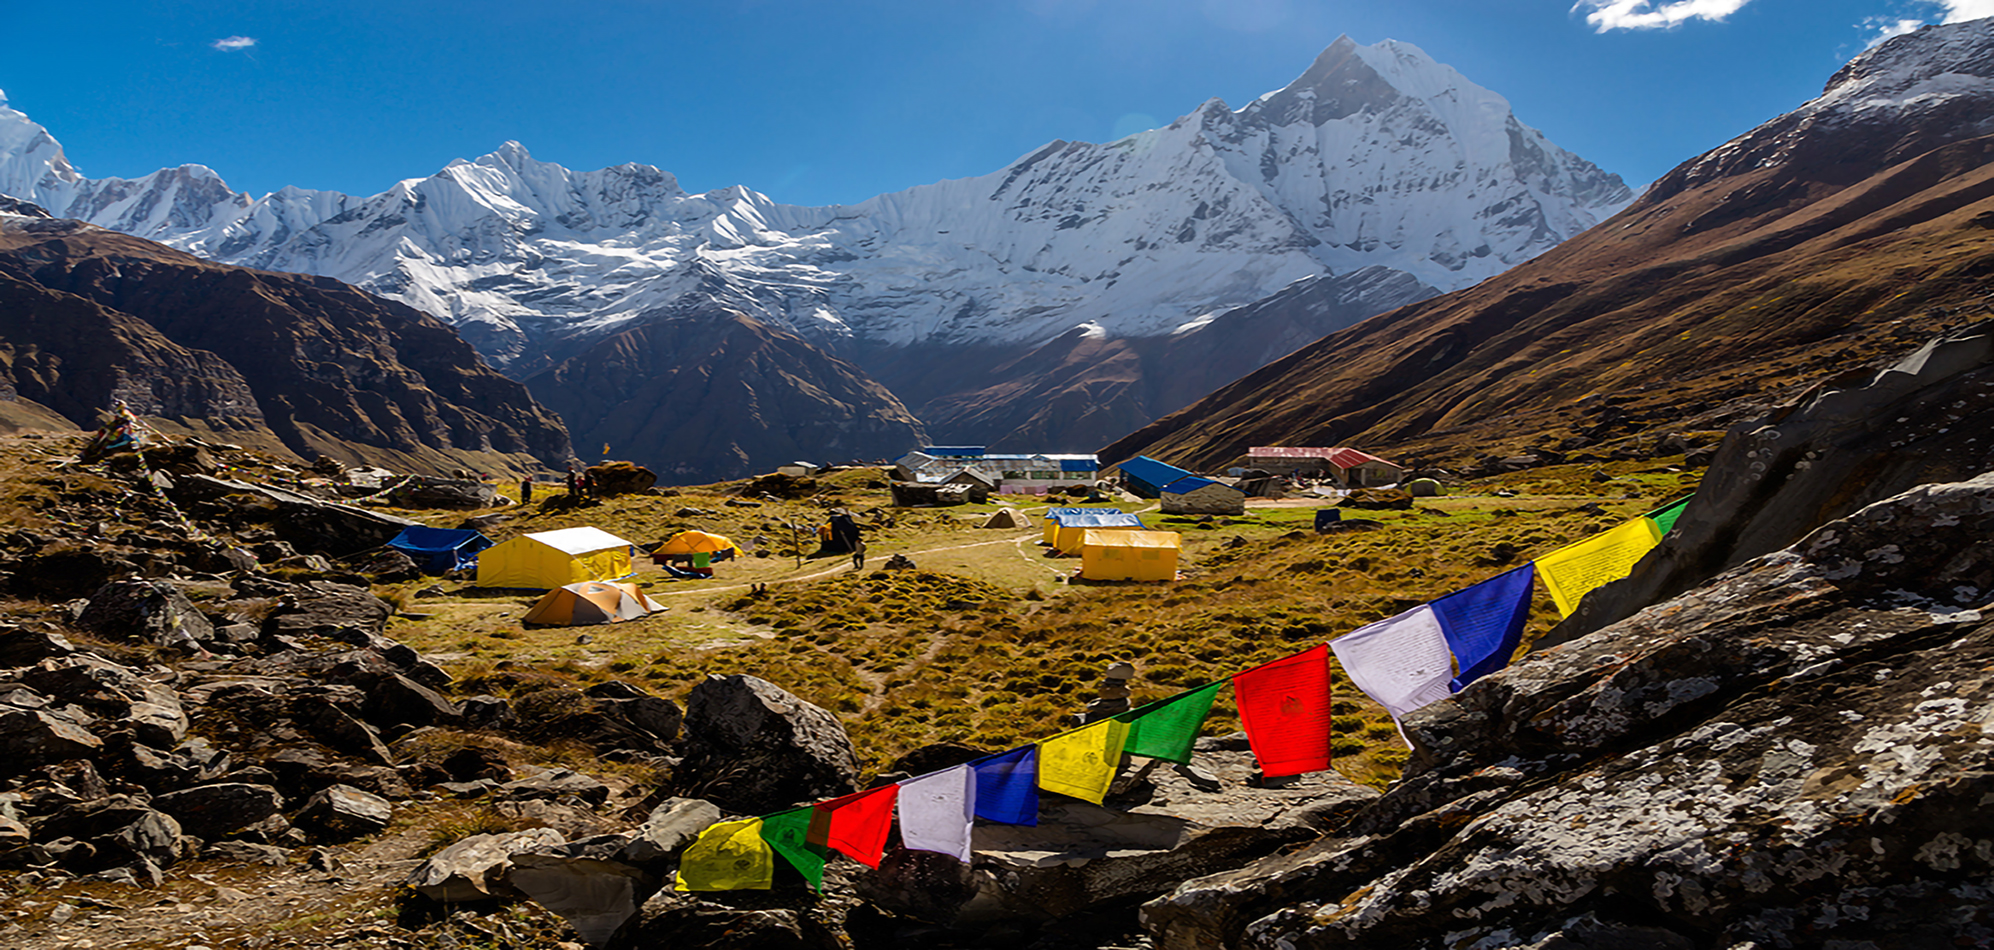 The Annapurna Base Camp Trek